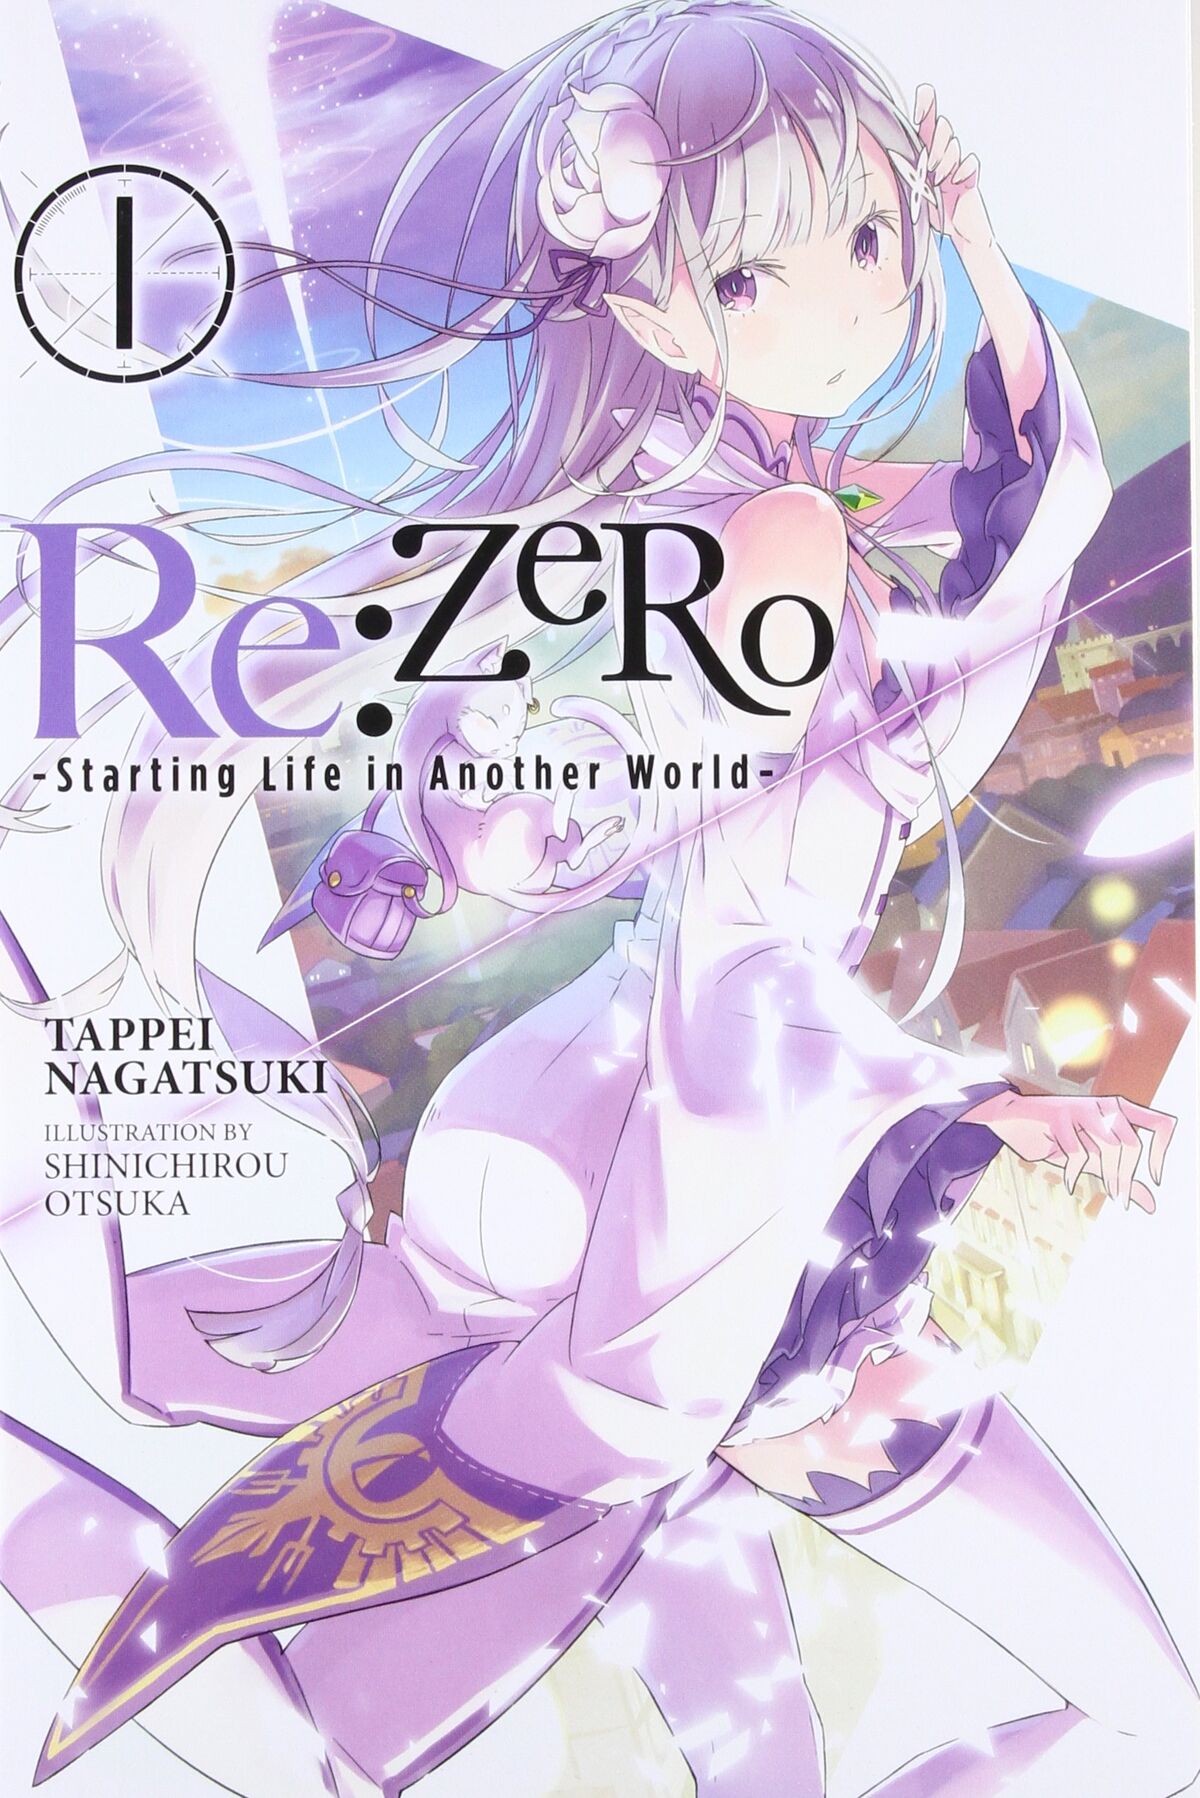 Zero Kara Hajimeru Mahō no Sho (manga) - Anime News Network